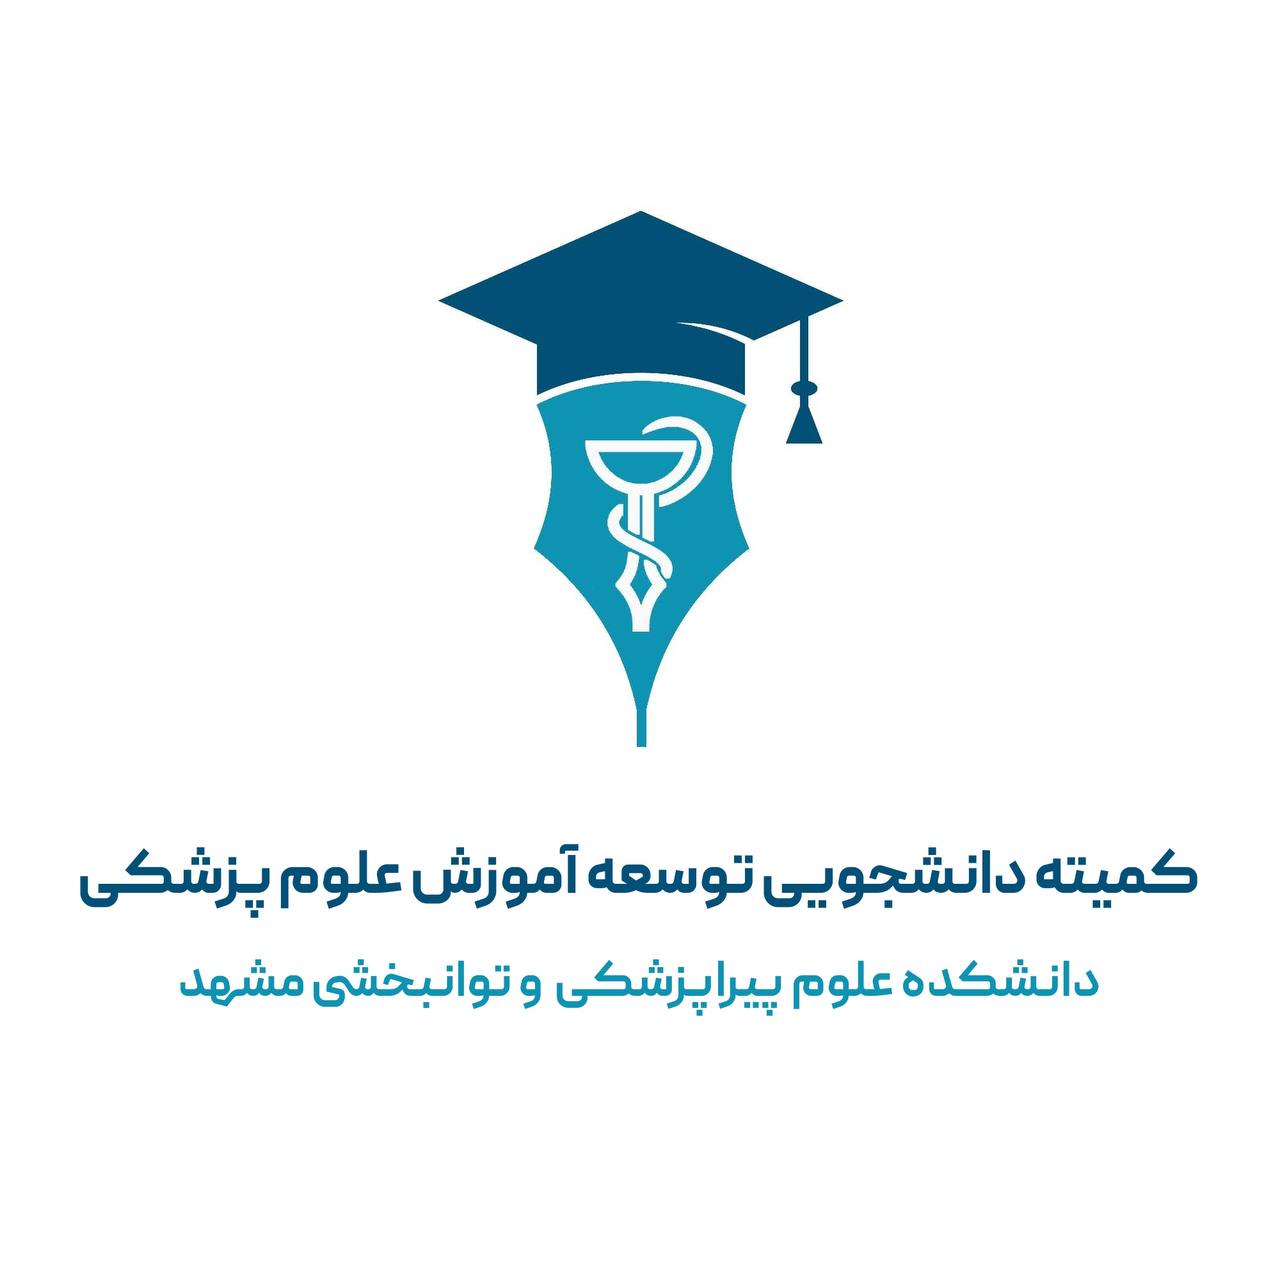 لوگو کمیته دانشجویی توسعه آموزش پیراپزشکی مشهد